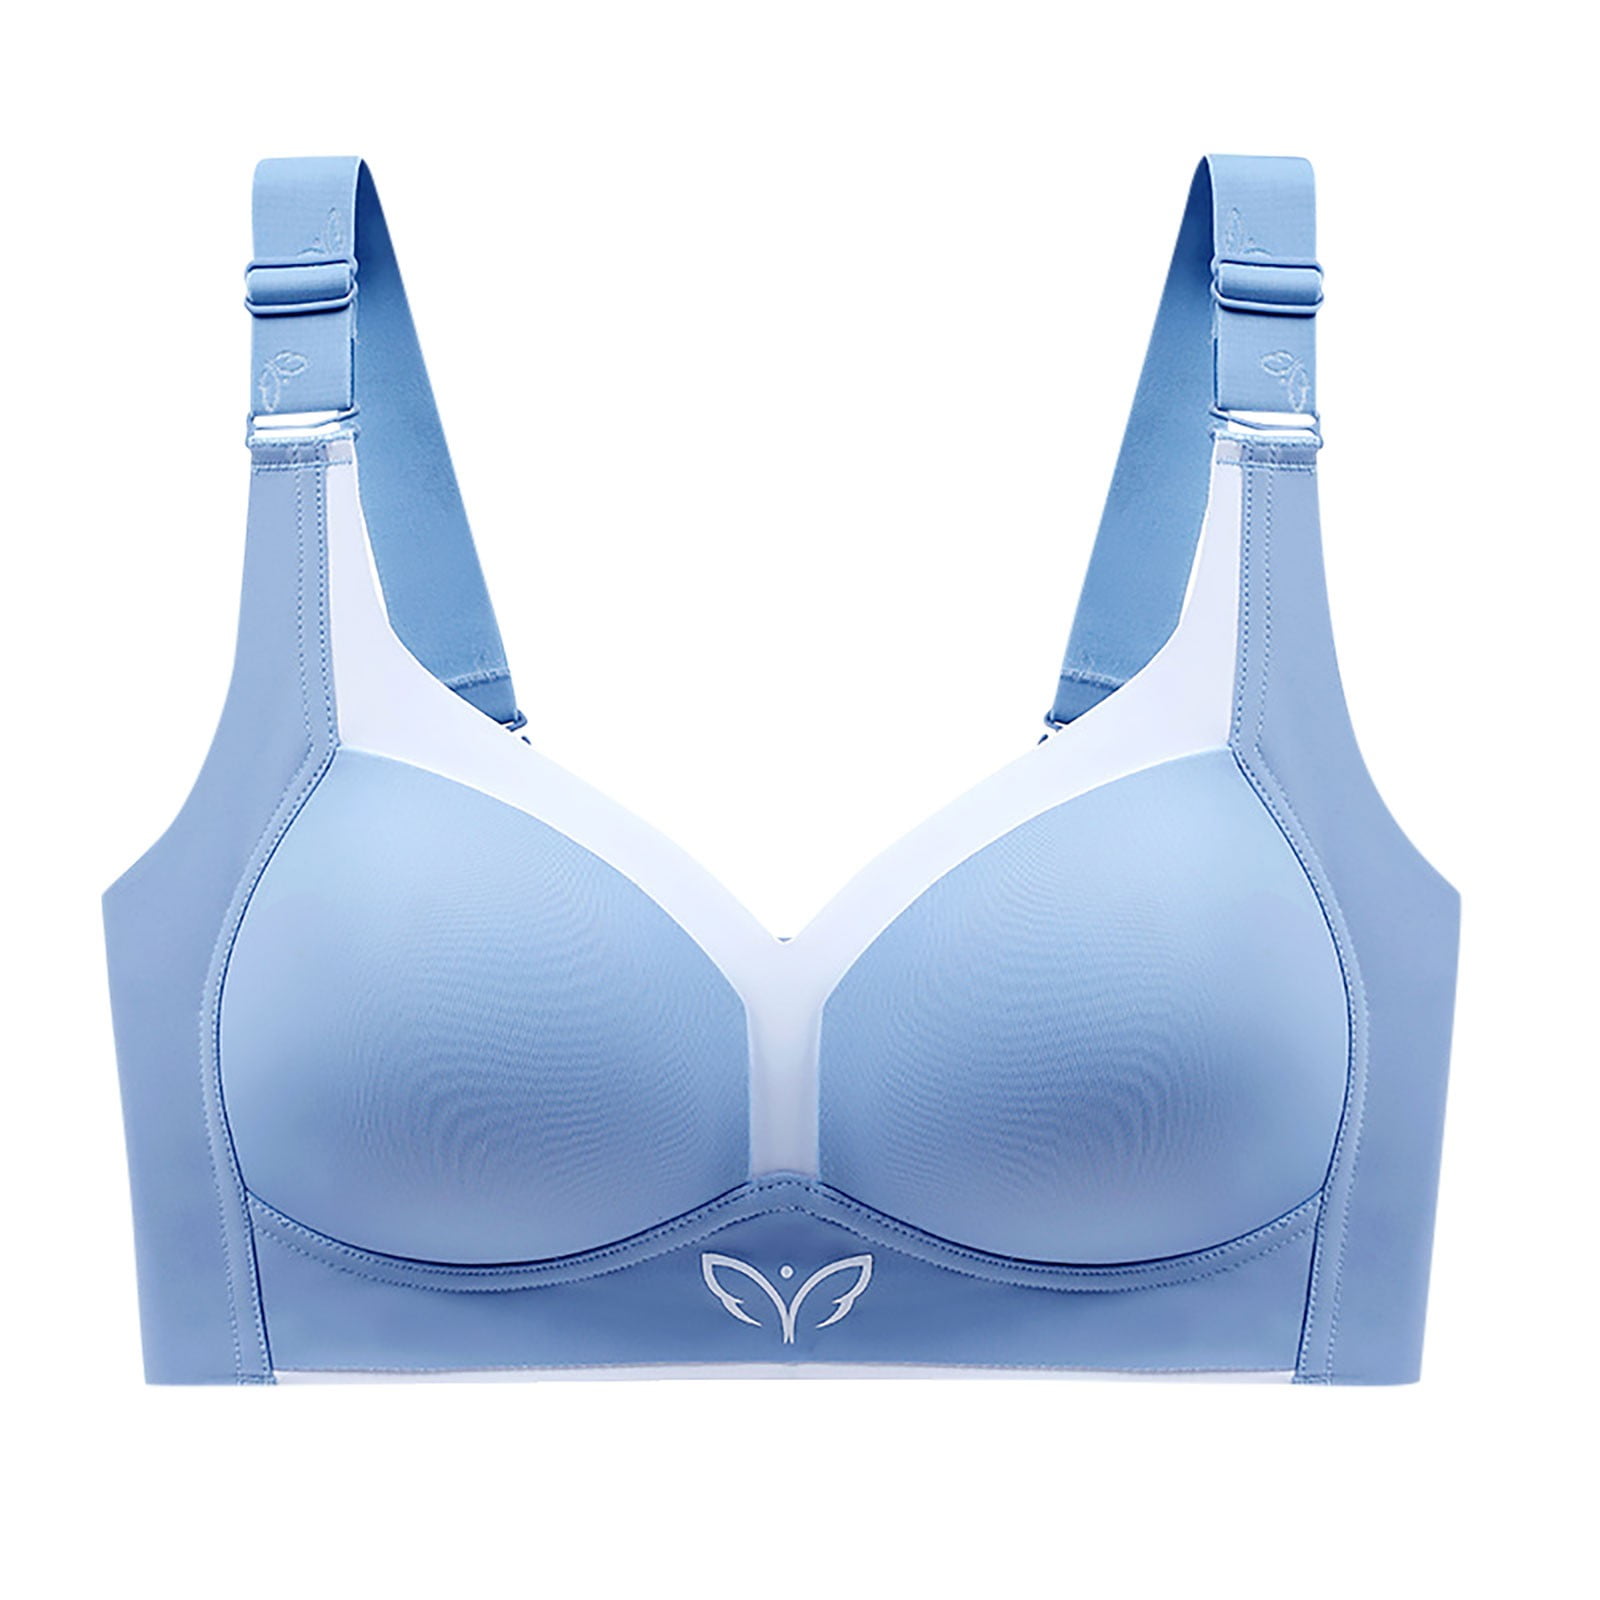 EZ-T Bra : Dazzling Blue, Supportive bras